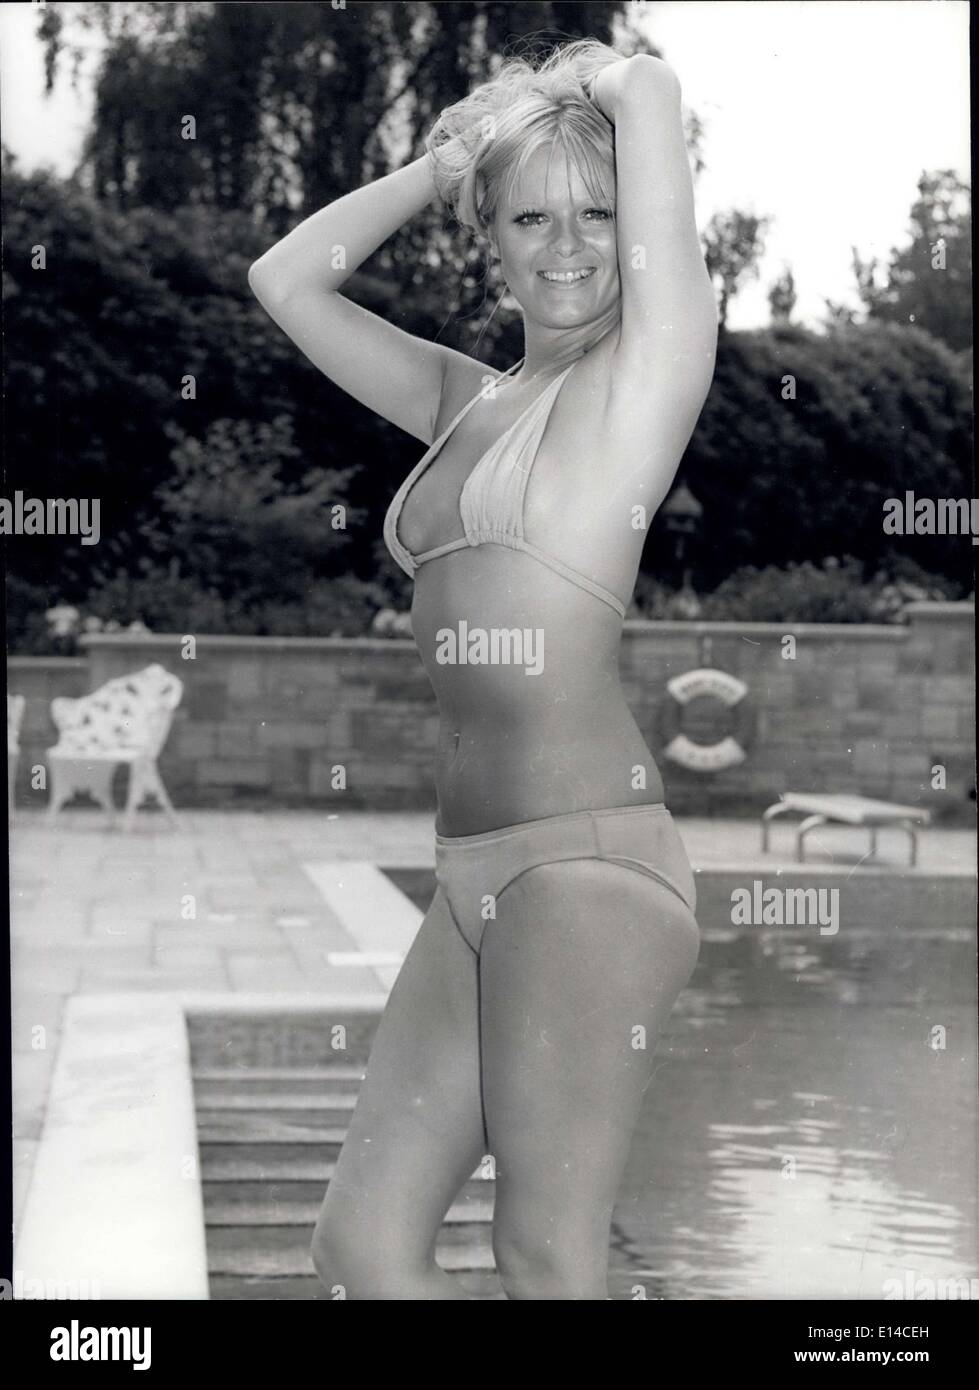 17. April 2012 - The Belle Of The Pool: Alle Augen auf Jenny Roberts als sie für ihr tägliches Bad ankommt, Jenny ist häufig auf dem Fernsehschirm zu sehen und wurde im Jahr 1974 '' Miss TV Zeiten '' gewählt. Stockfoto